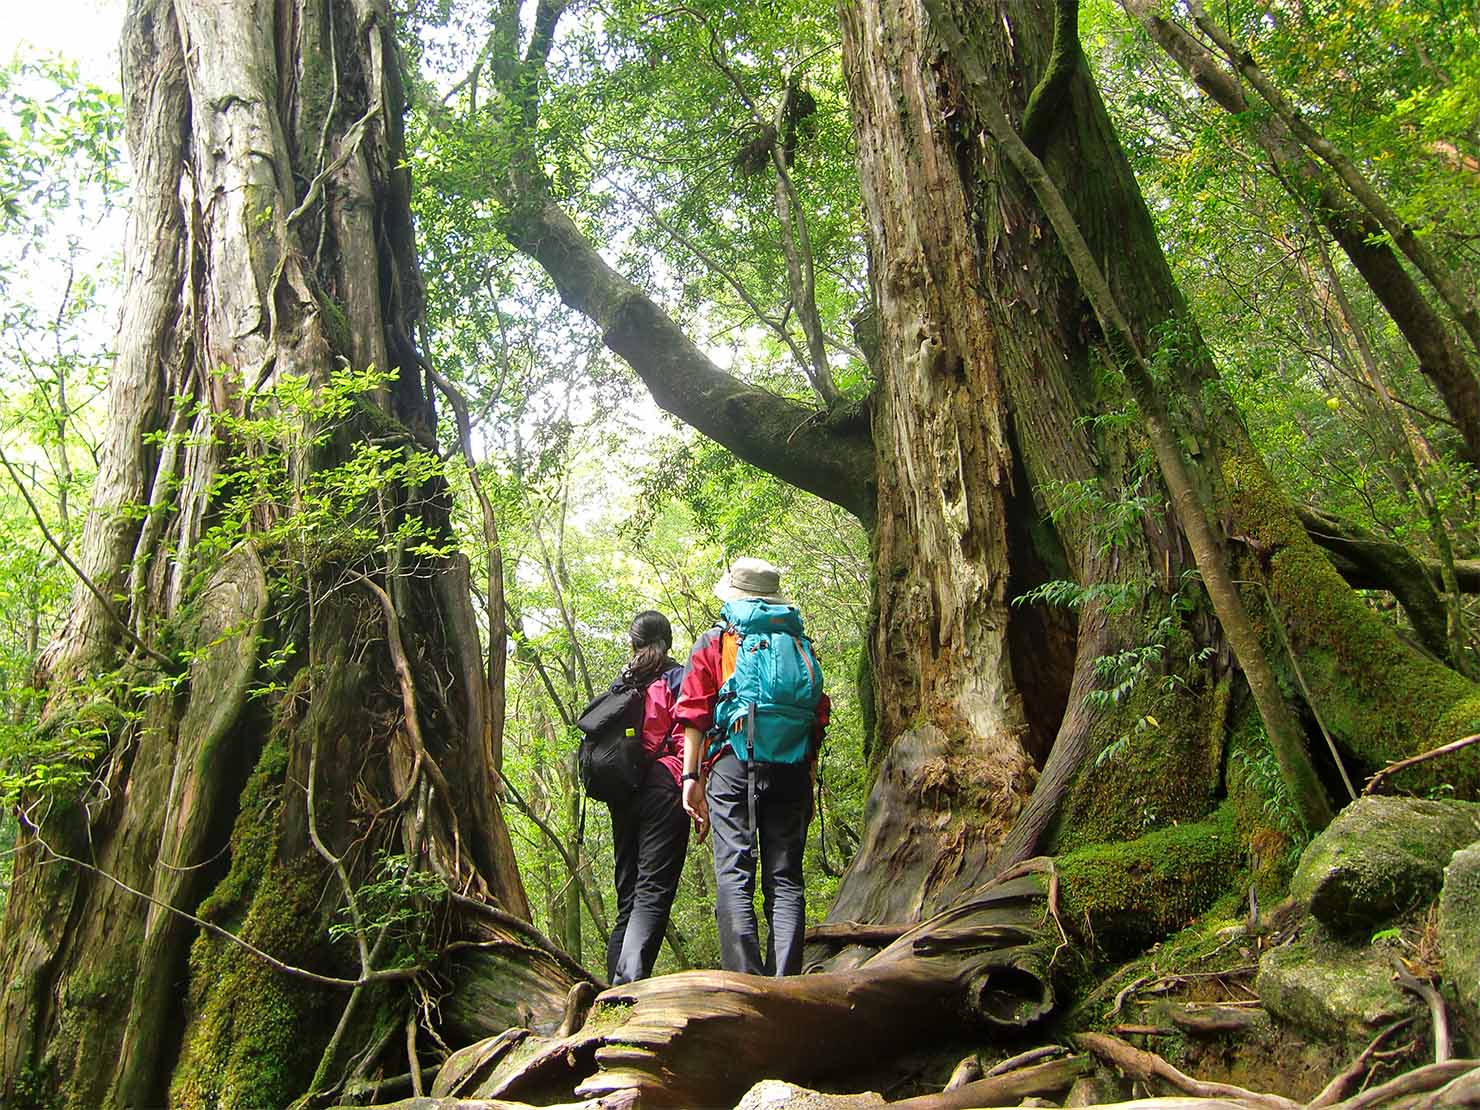 屋久島の山岳部を、2名の登山者が足を止め、登山道の両脇にある大きなスギの木を見上げている様子。